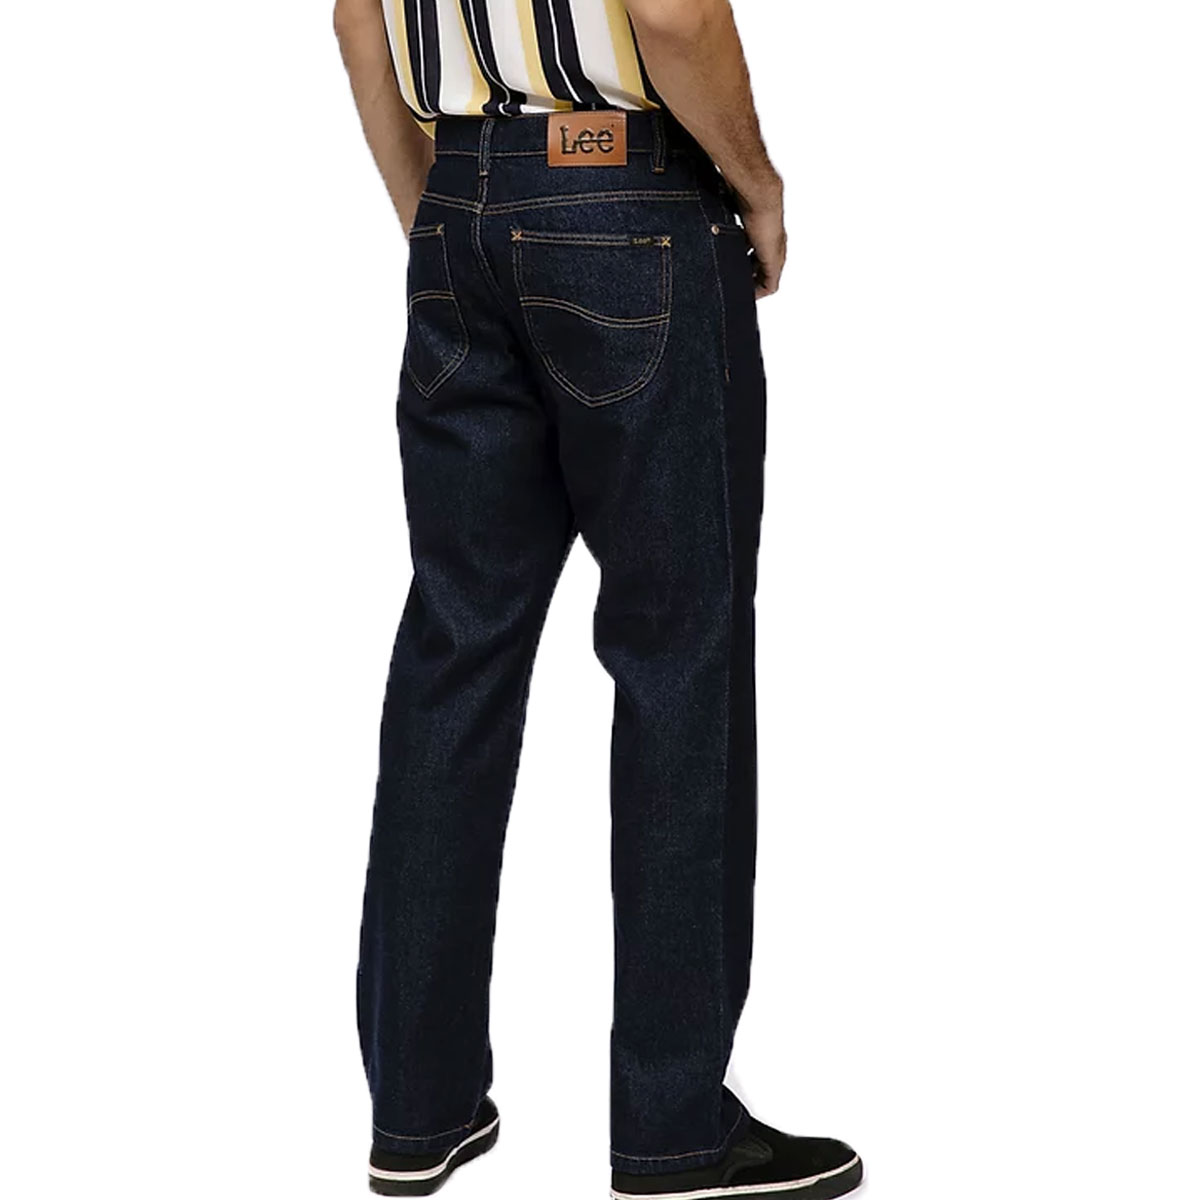 Calça jeans chicago premium masculina LEE 1004L